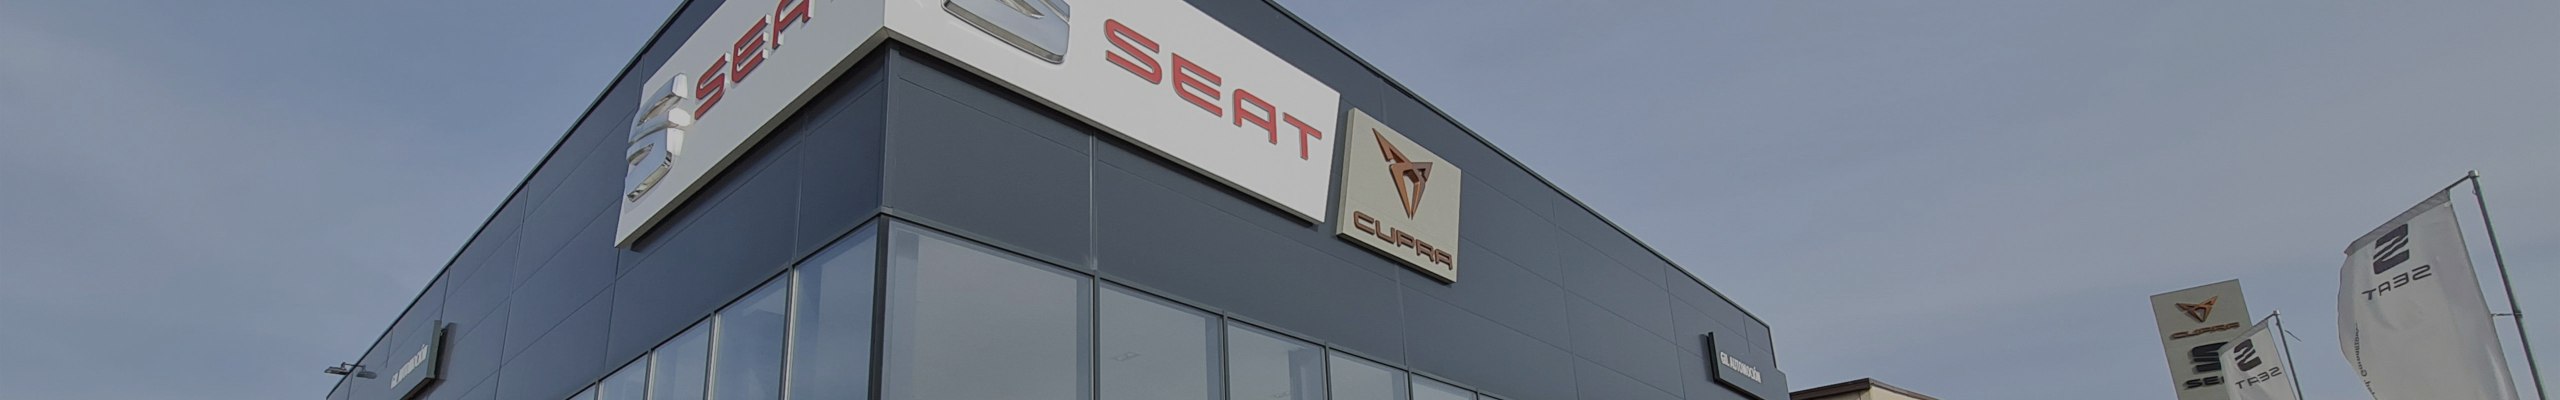 SEAT Gil Automoción ganador del progama de excelencia en posventa 2021.